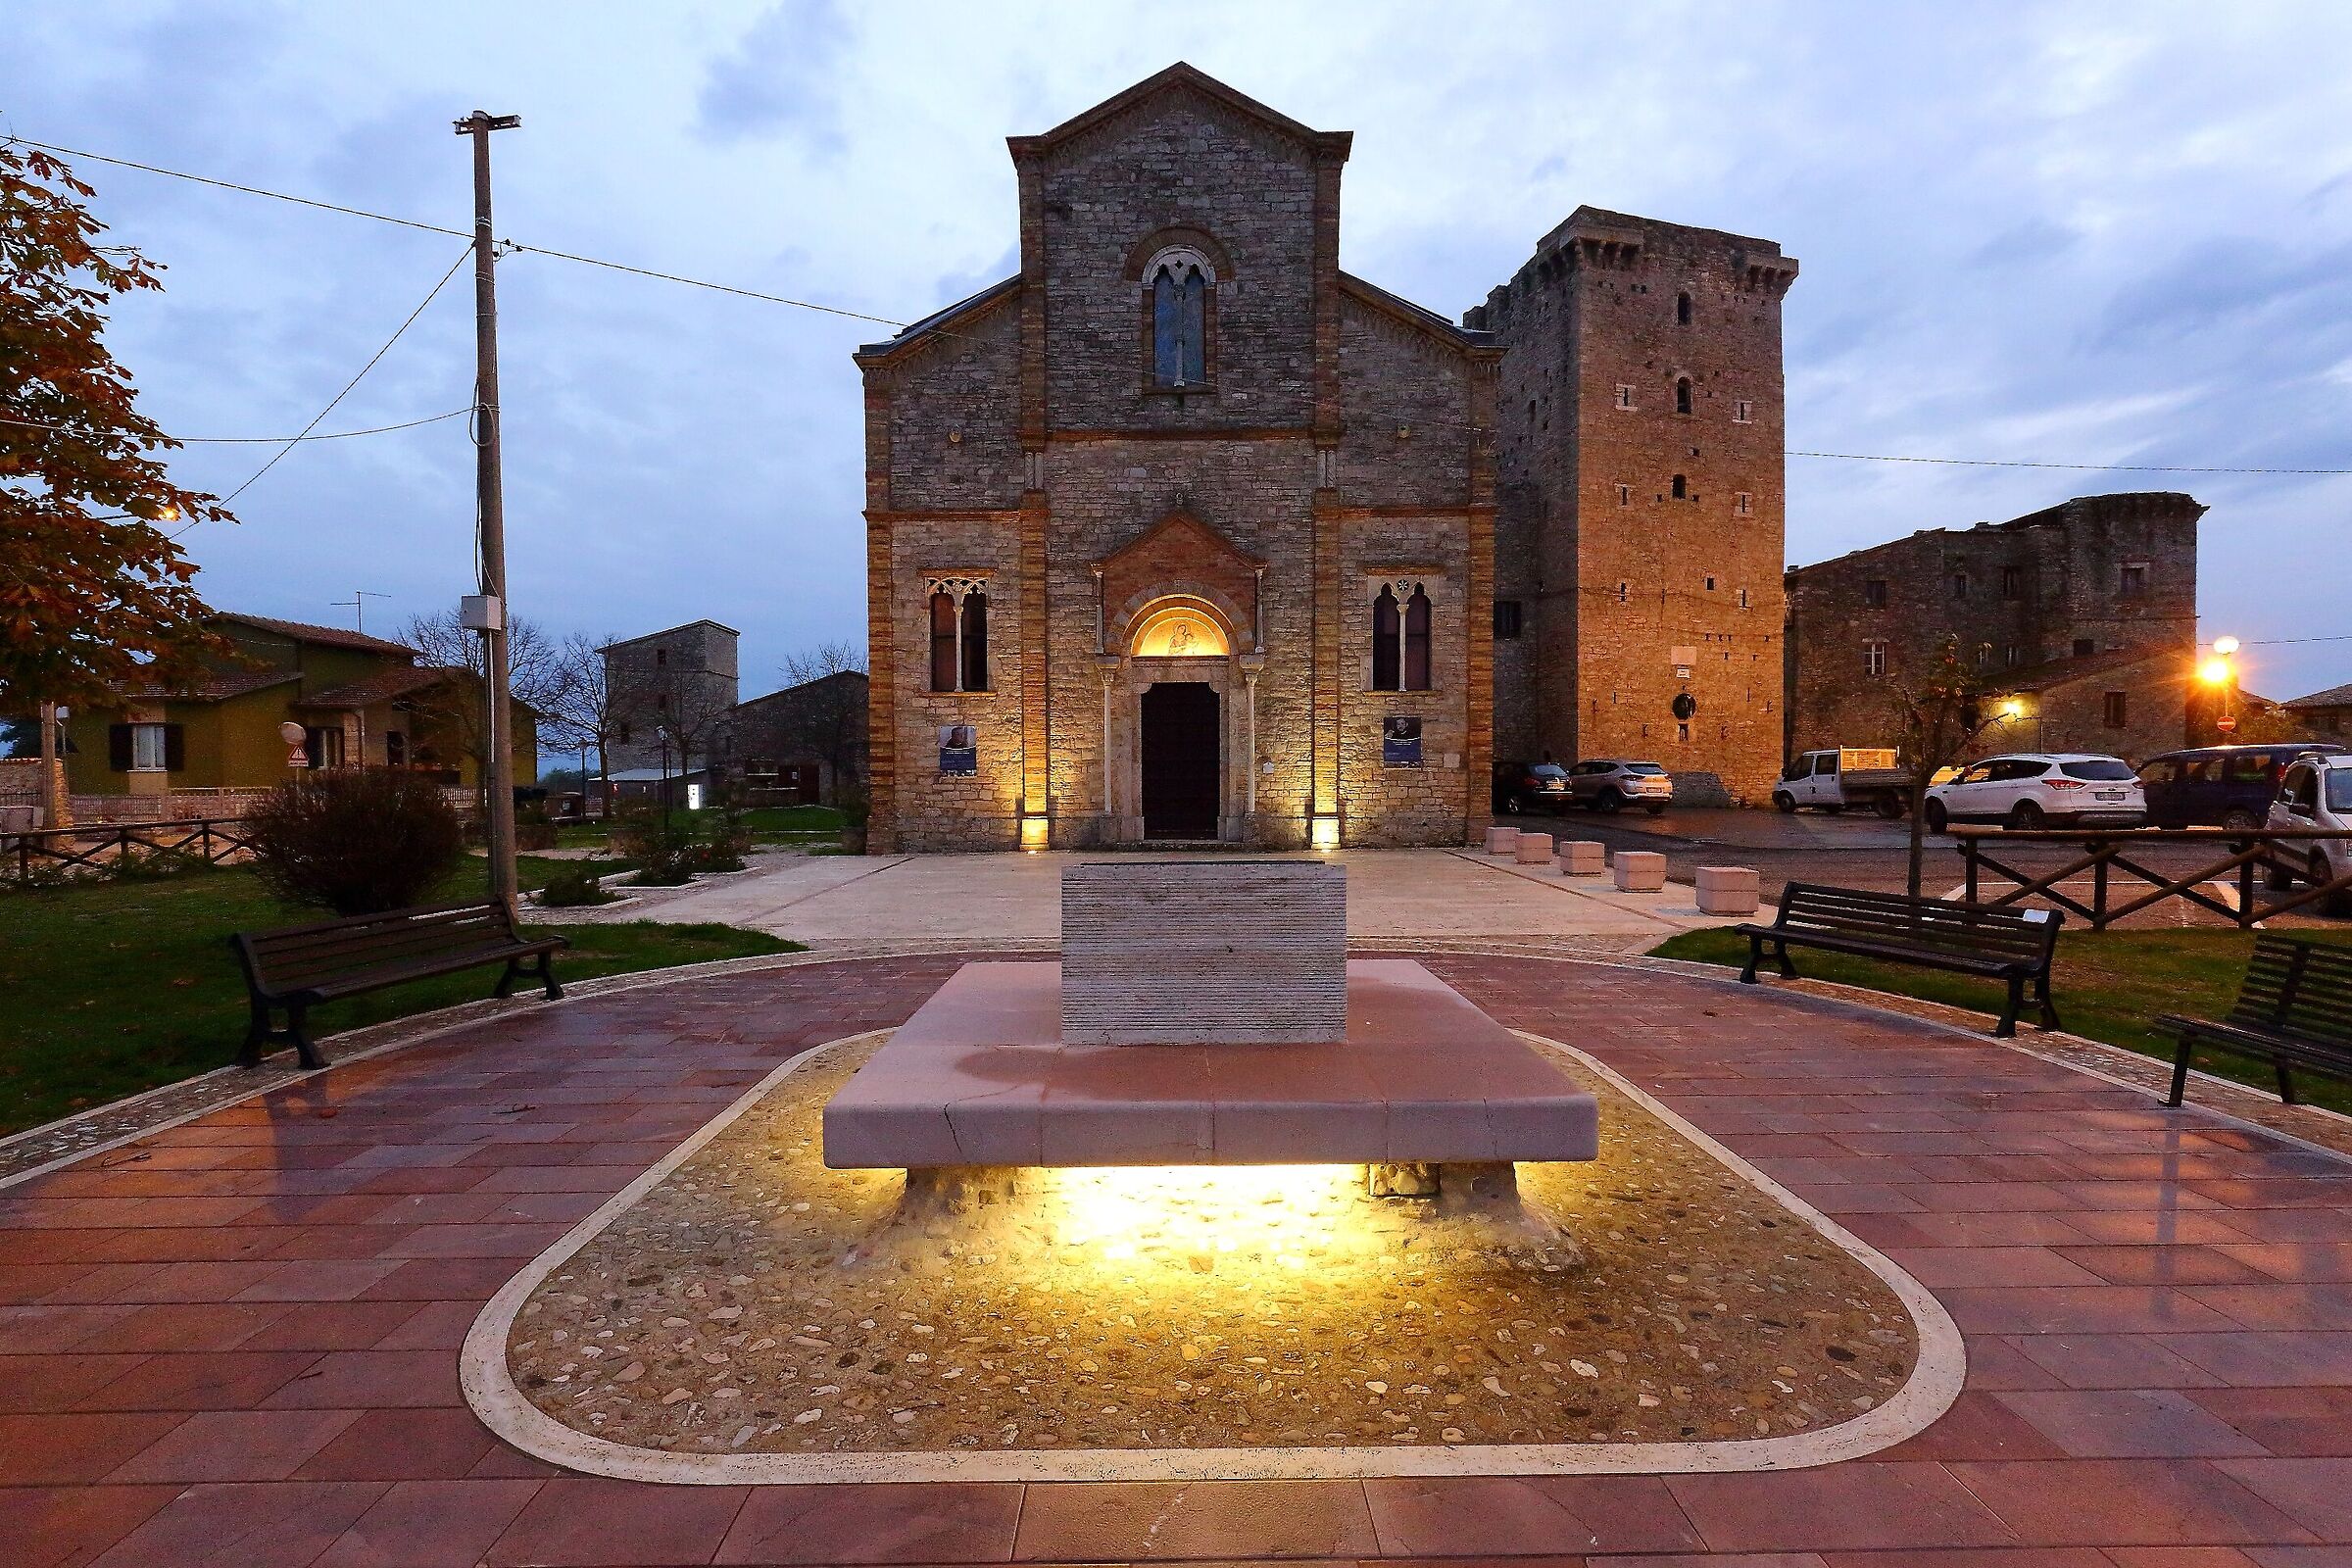 The church of Grutti in Umbria...